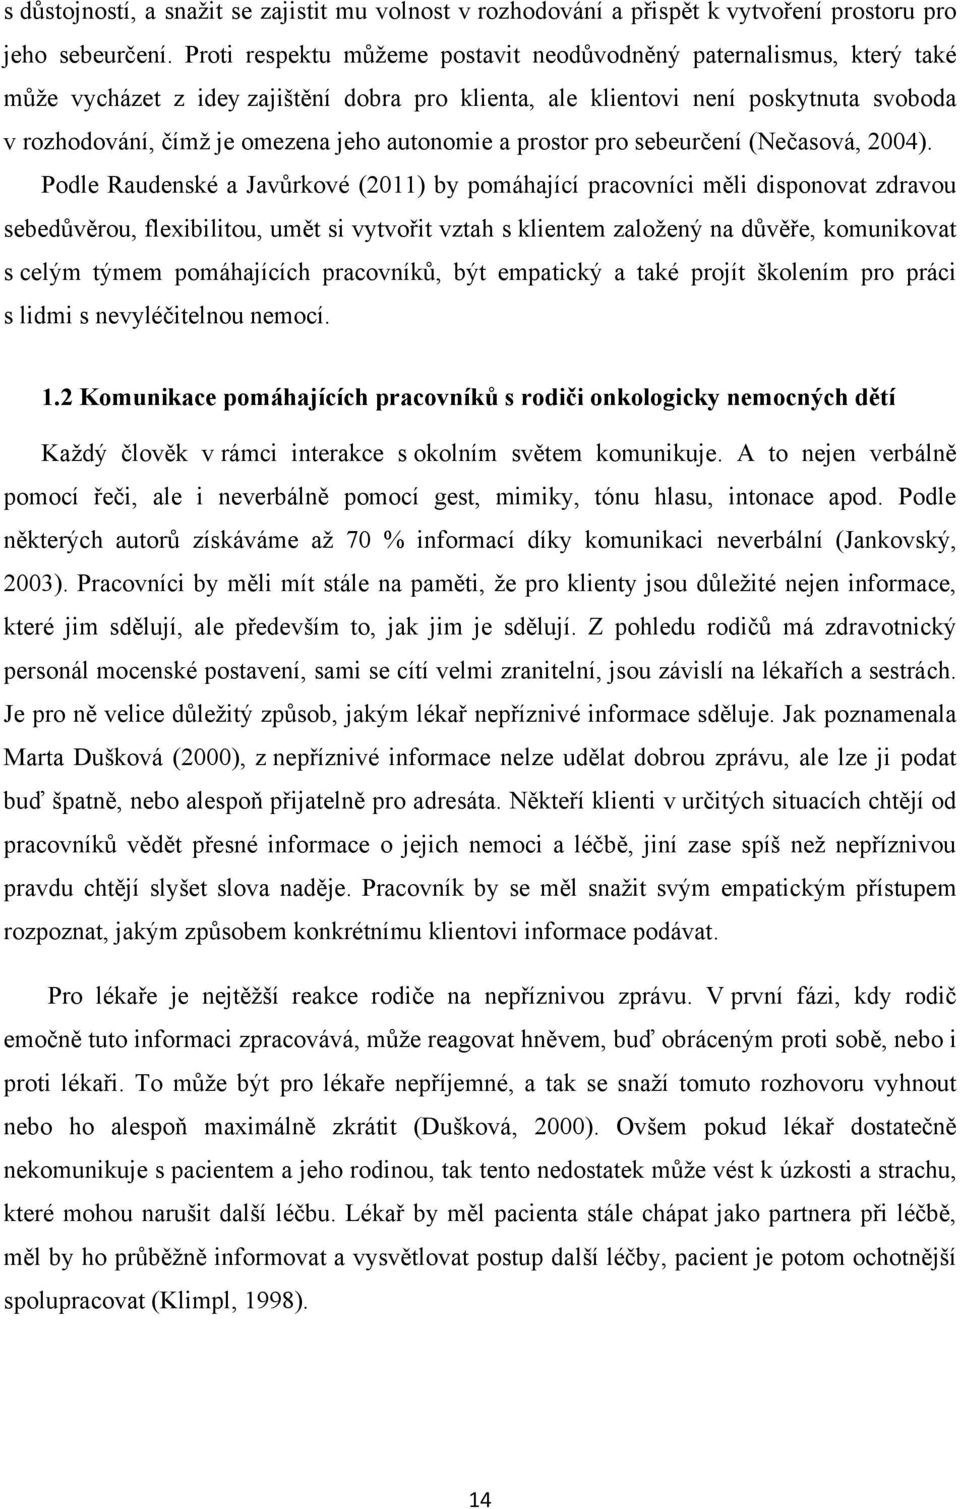 autonomie a prostor pro sebeurčení (Nečasová, 2004).